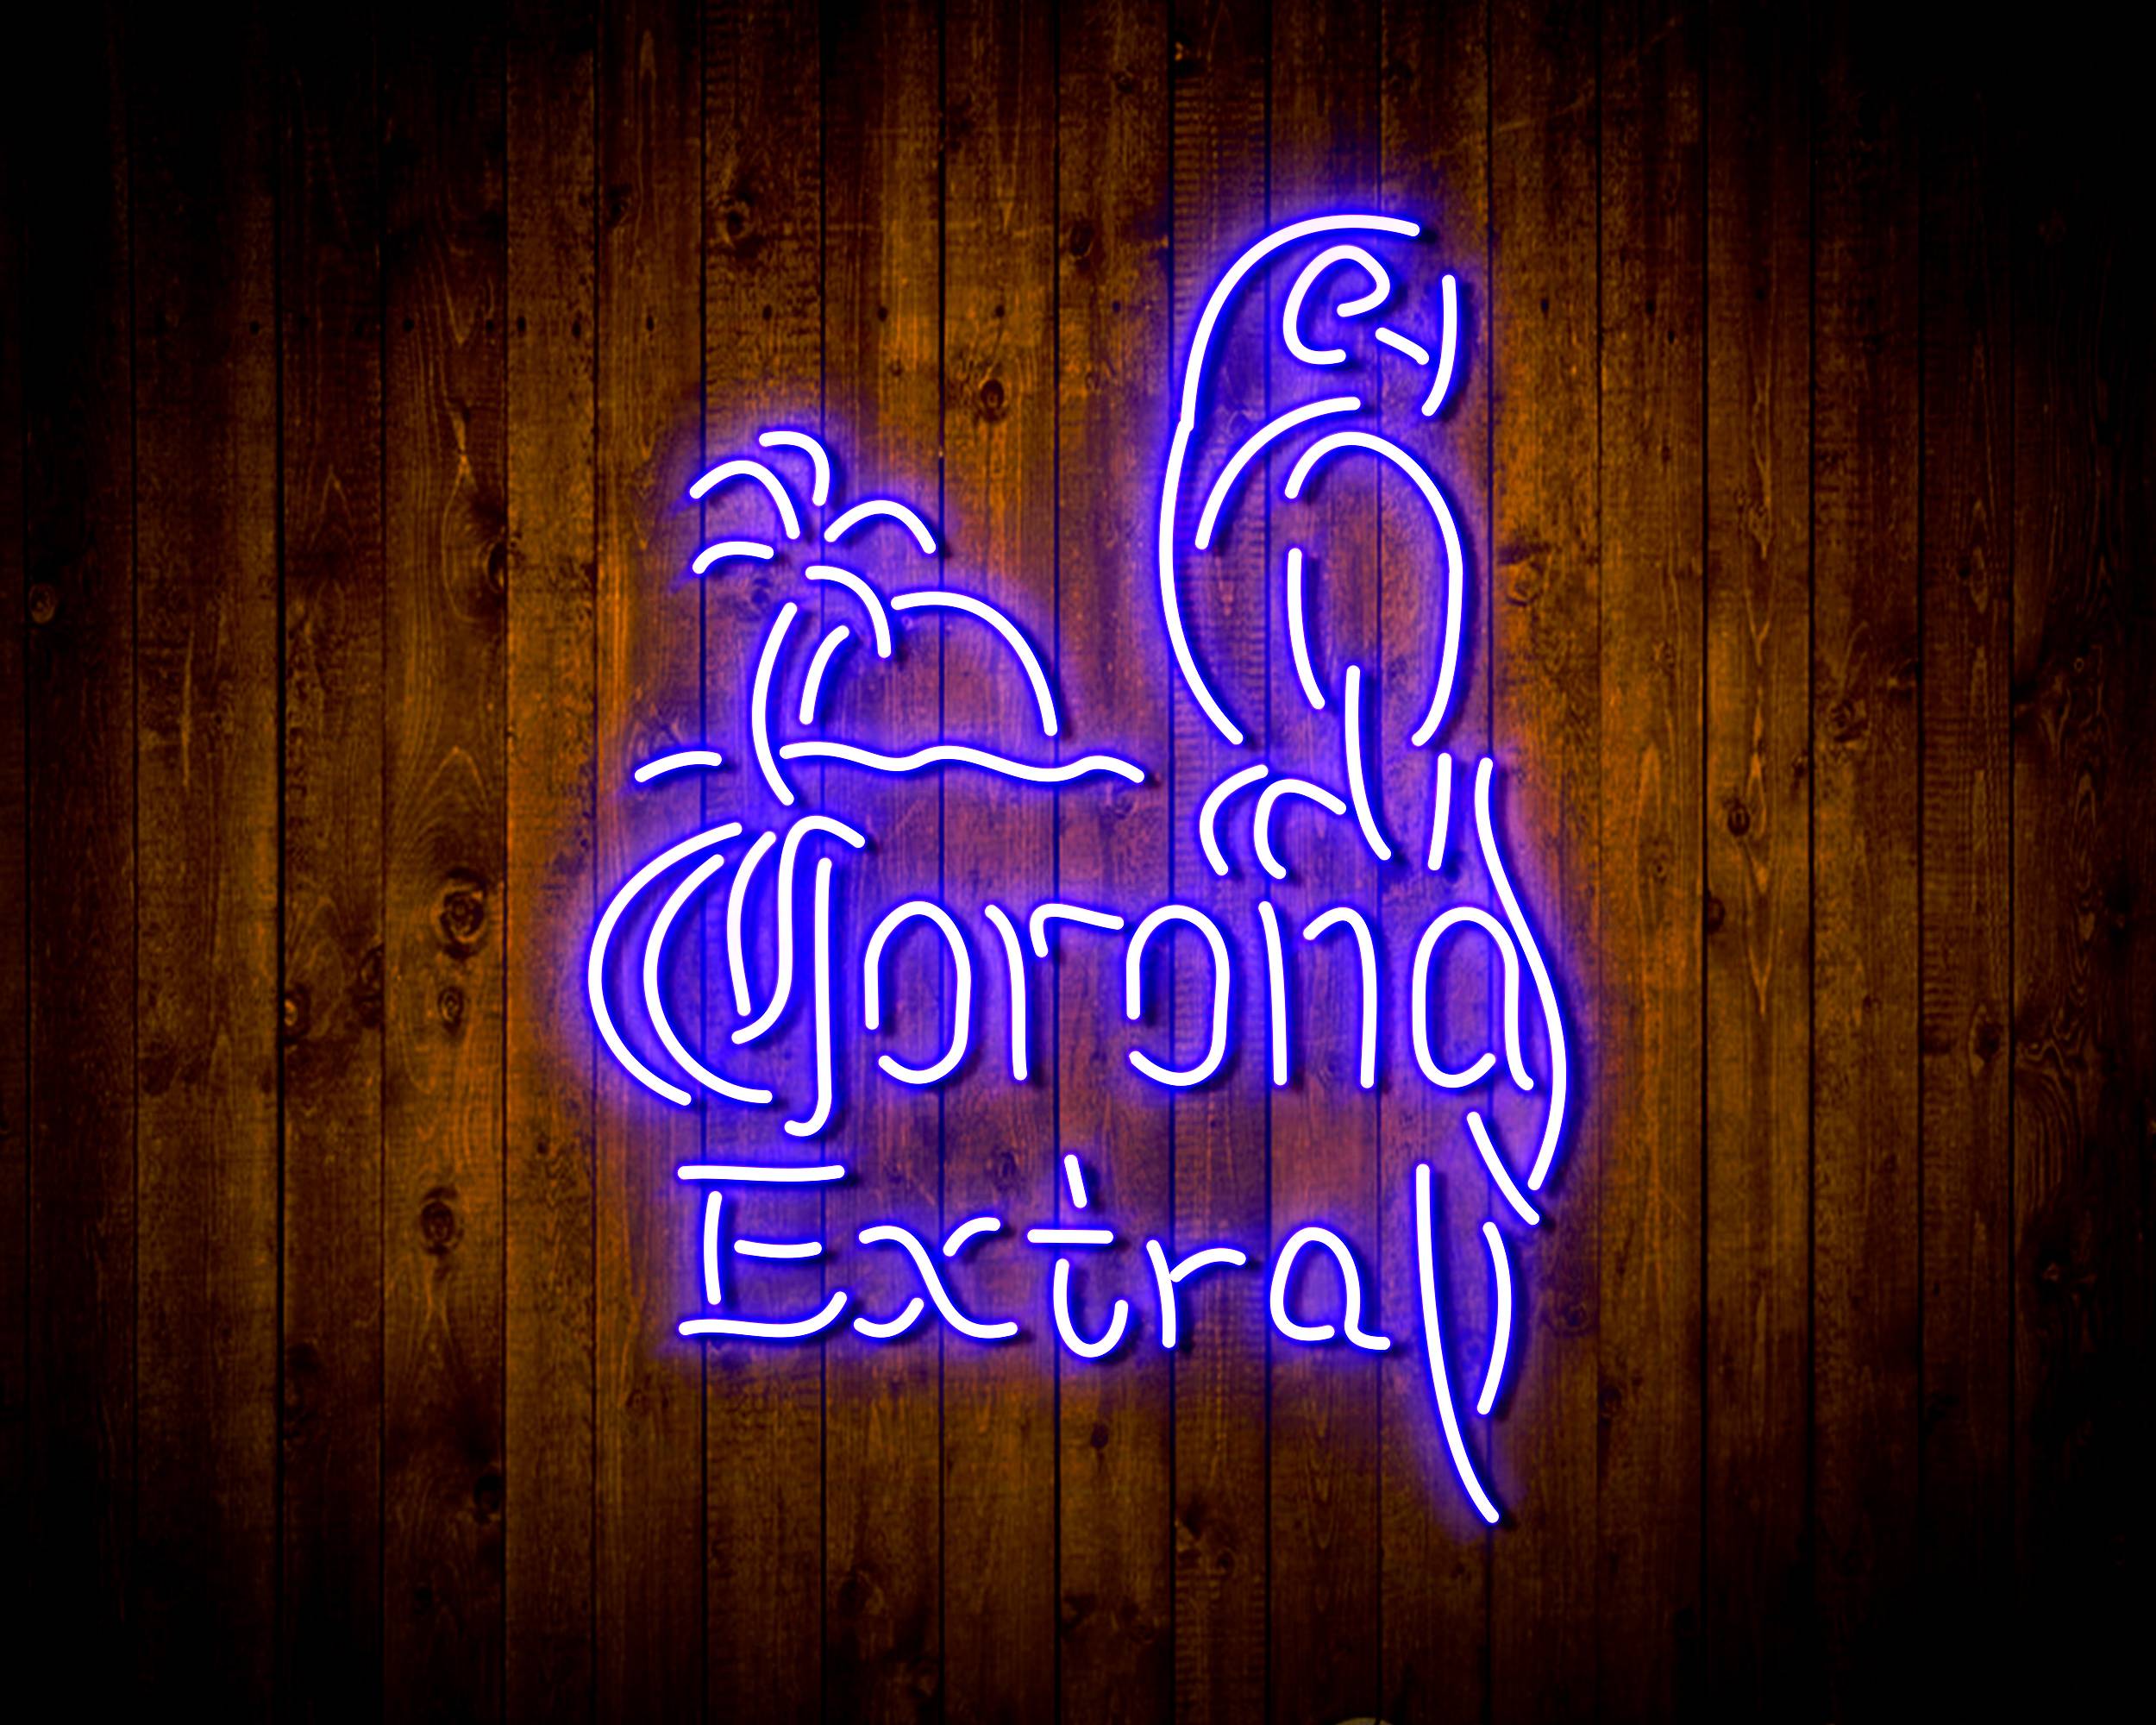 Corona Extra with Cadinal Handmade LED Neon Light Sign